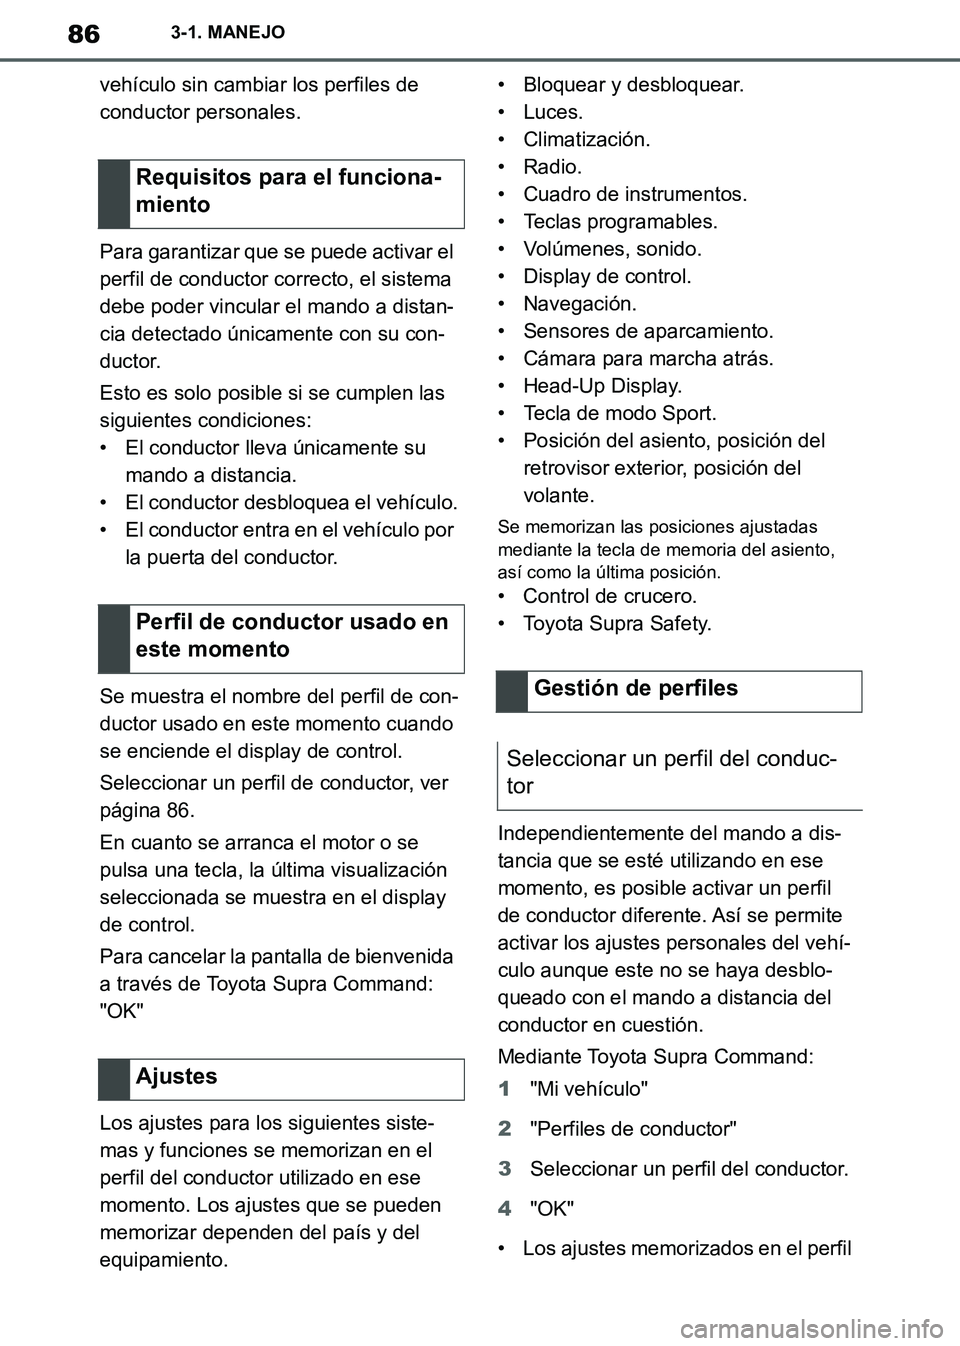 TOYOTA SUPRA 2019  Manuale de Empleo (in Spanish) 86
Supra Owners Manual_ES
3-1. MANEJO
vehículo sin cambiar los perfiles de 
conductor personales.
Para garantizar que se puede activar el 
perfil de conductor correcto, el sistema 
debe poder vincul